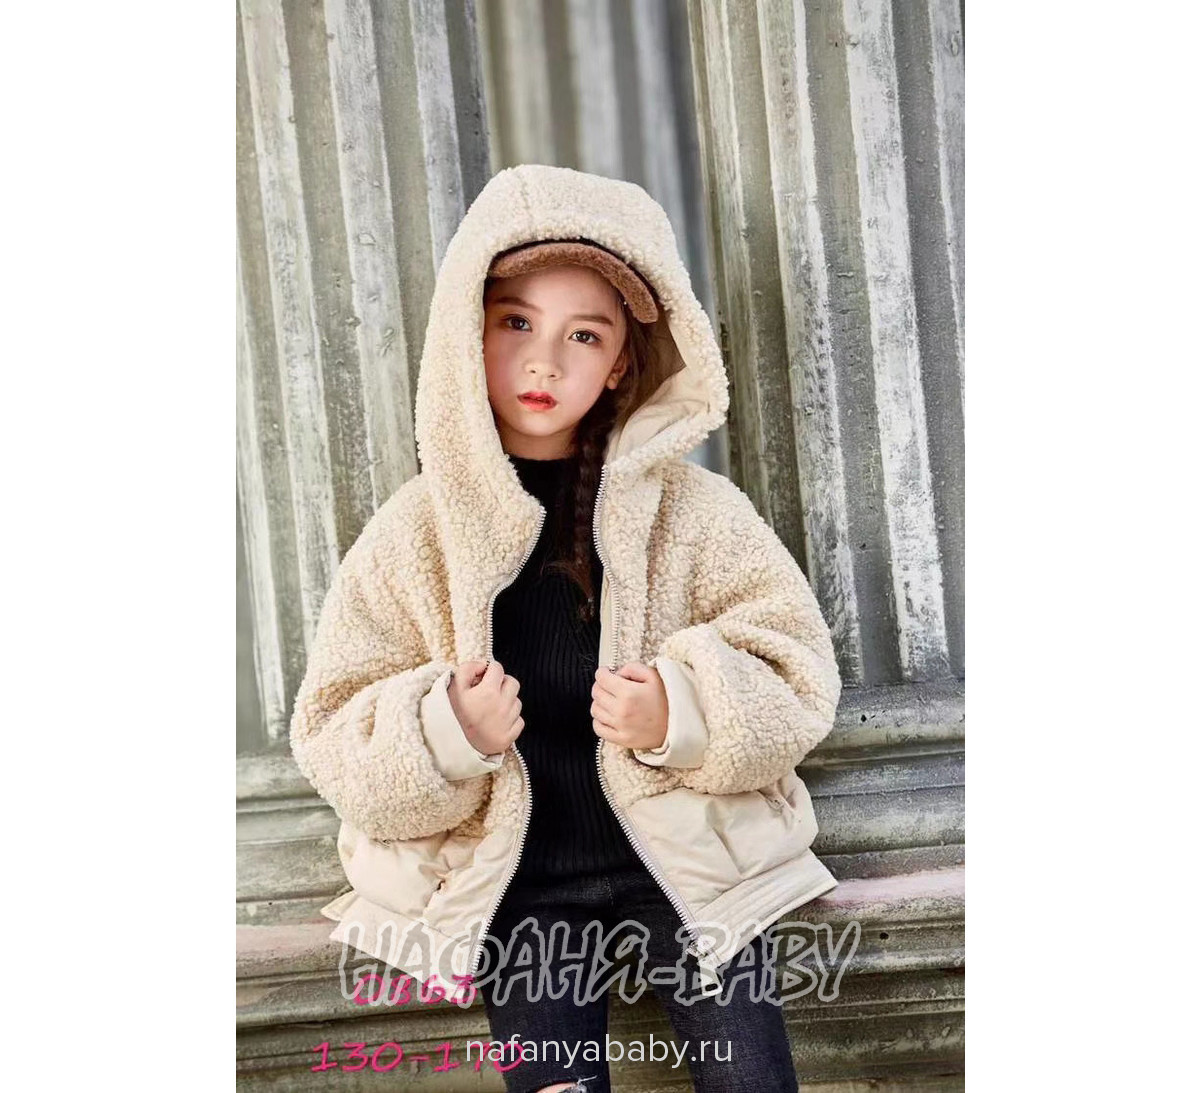 Детская демисезонная куртка W.X. арт: 0863, 10-15 лет, 5-9 лет, цвет серый, оптом Китай (Пекин)